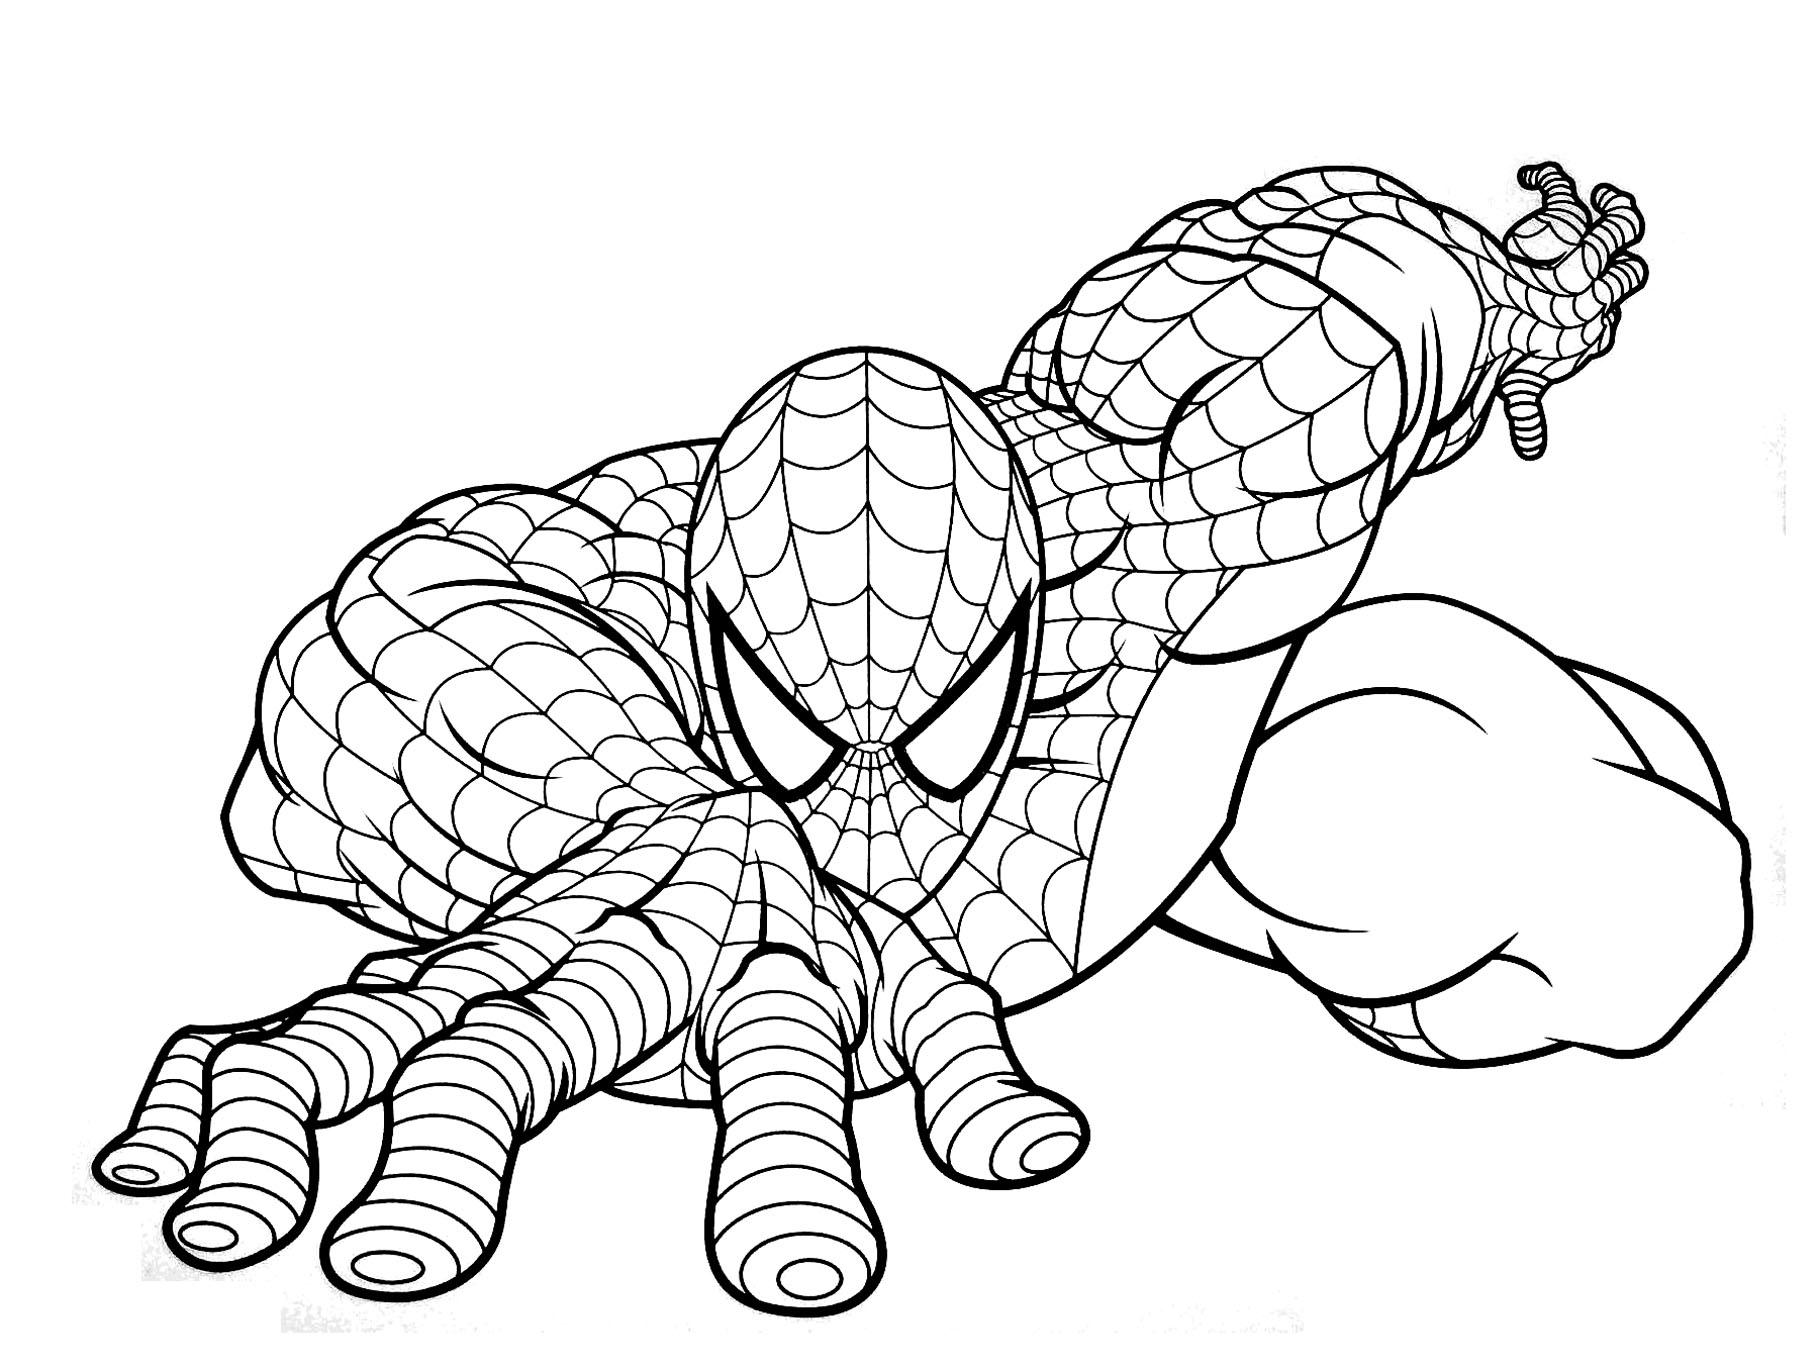 Bonito desenho do Homem-Aranha para colorir